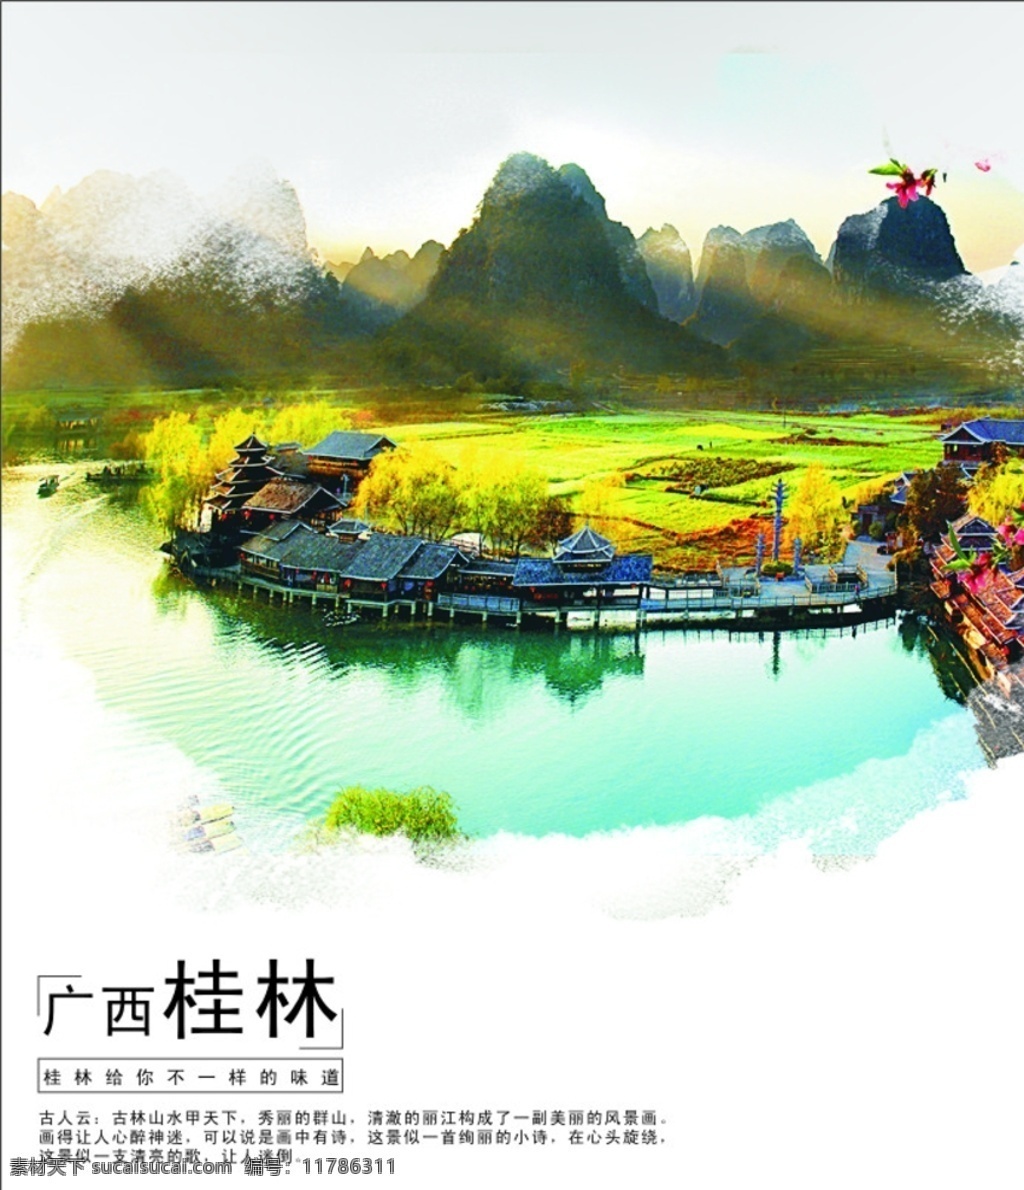 广西 桂林 明信片 广西桂林 风景图 背景 景点 名片卡片